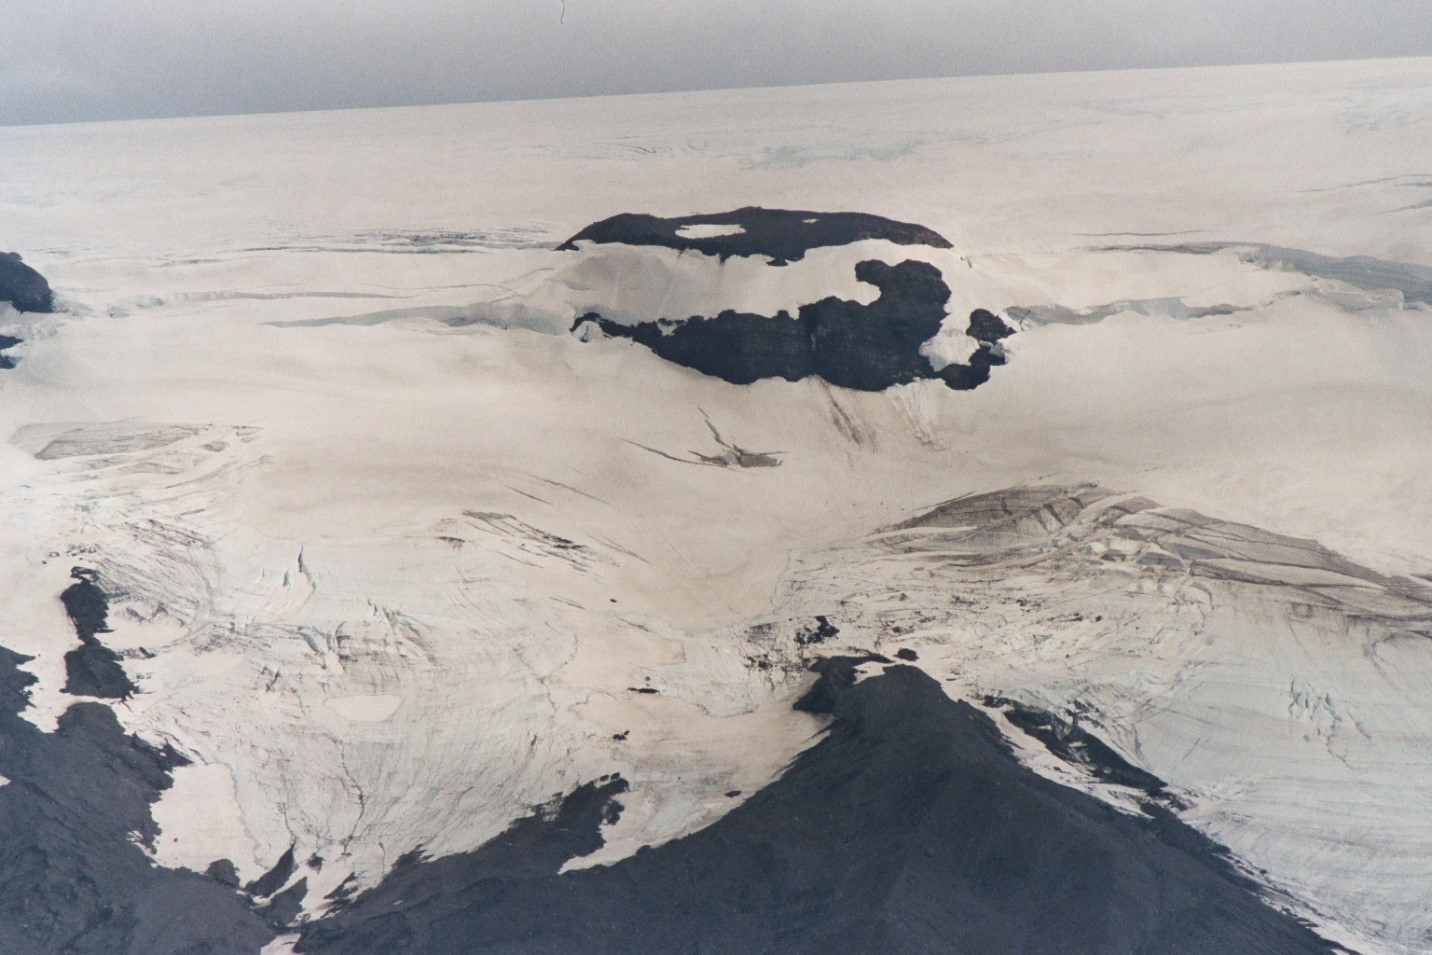 Langjökull Volcano